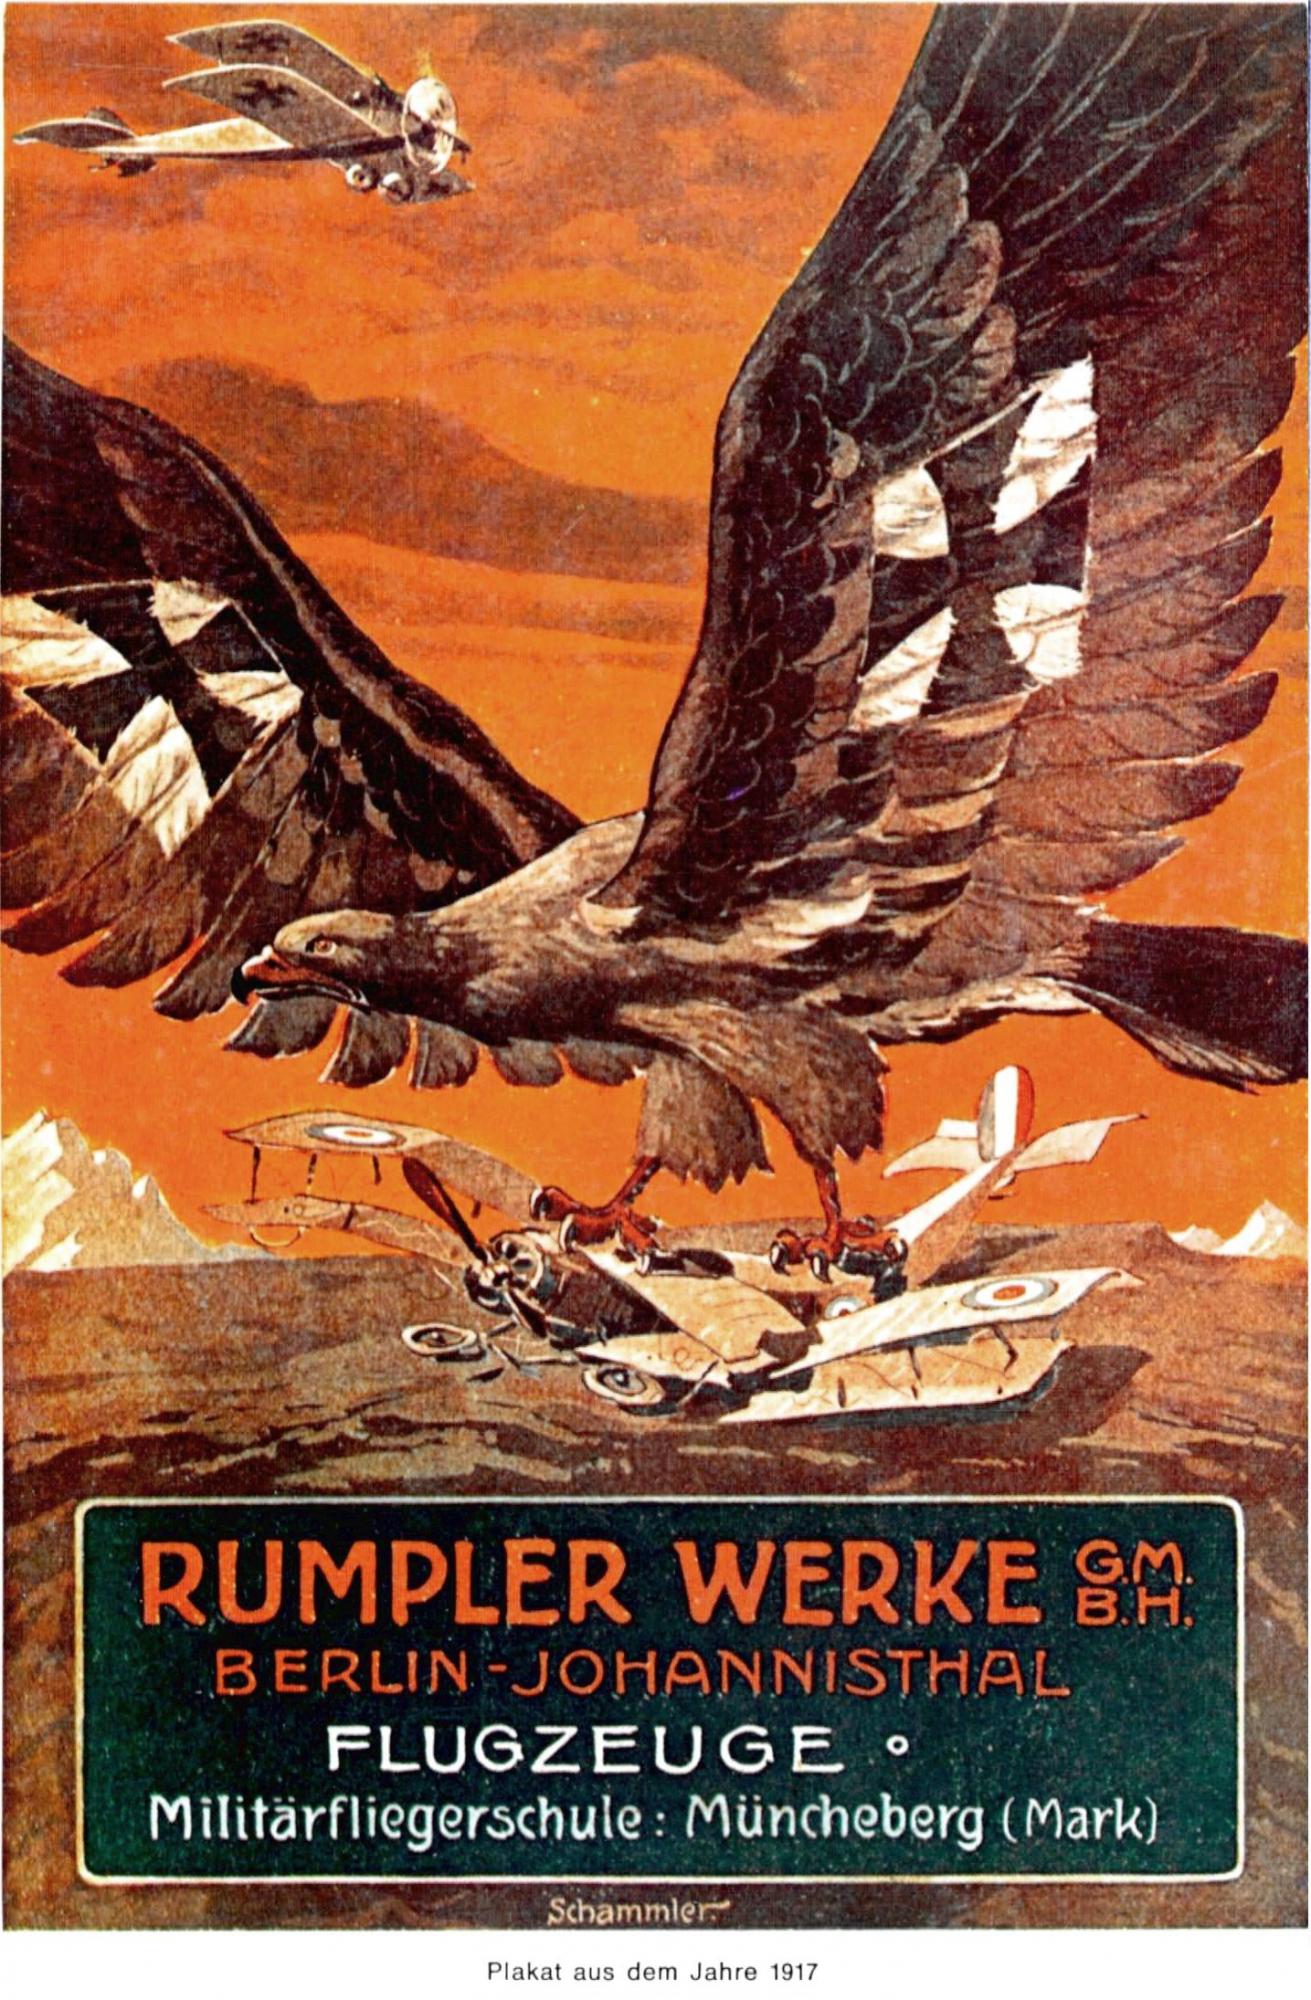 Немецкие пропагандистские плакаты об авиации времен Первой Мировой войны